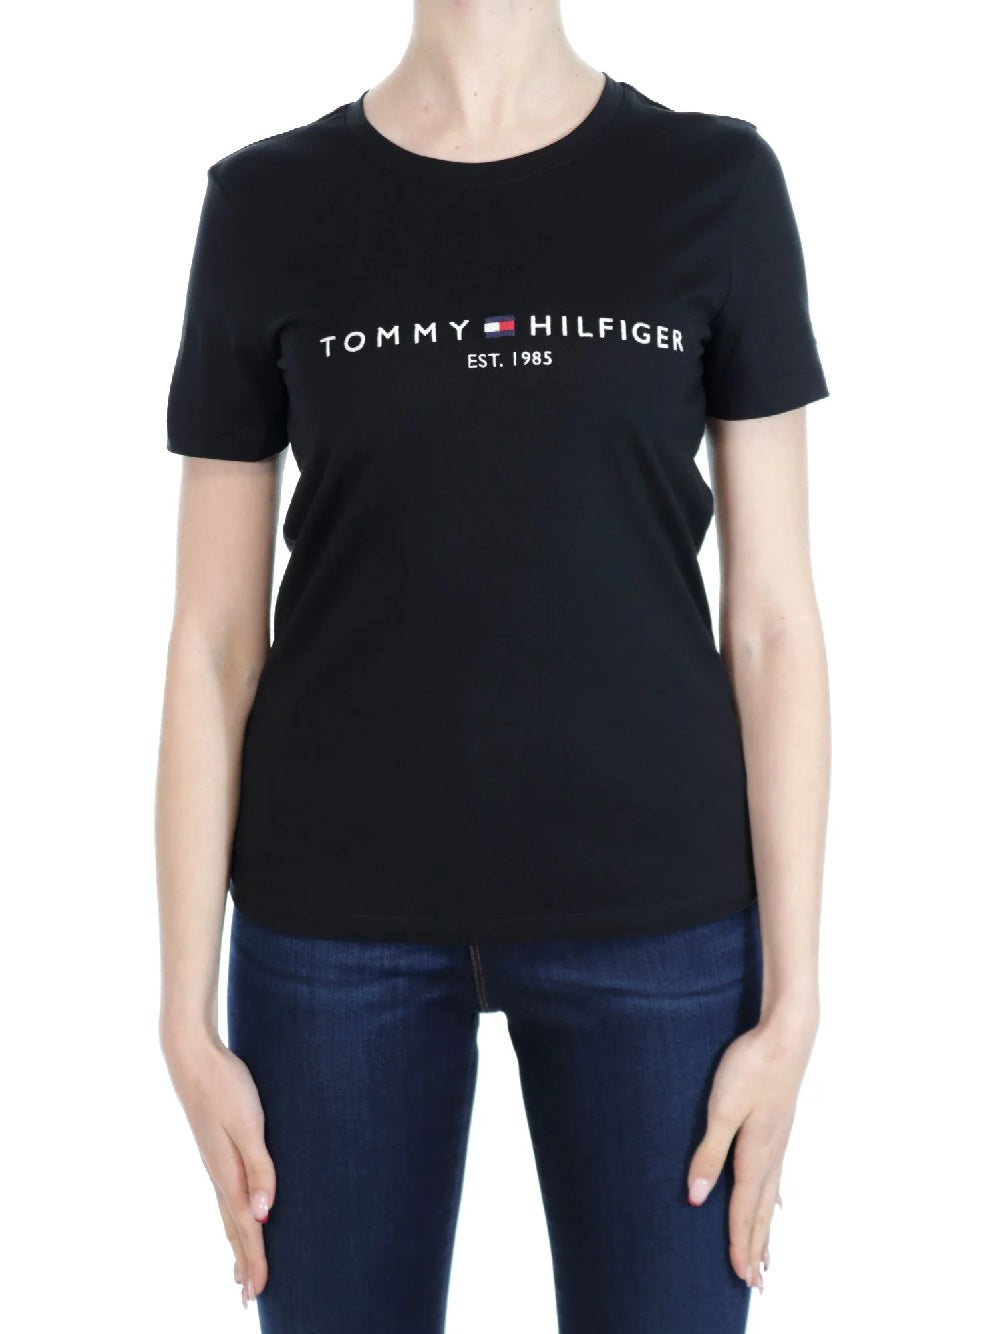 T-shirt Tommy Hilfiger modello WW0WW31999 decorata dall'iconico logo sul petto. Bandierina ricamata sulla manica sinistra.